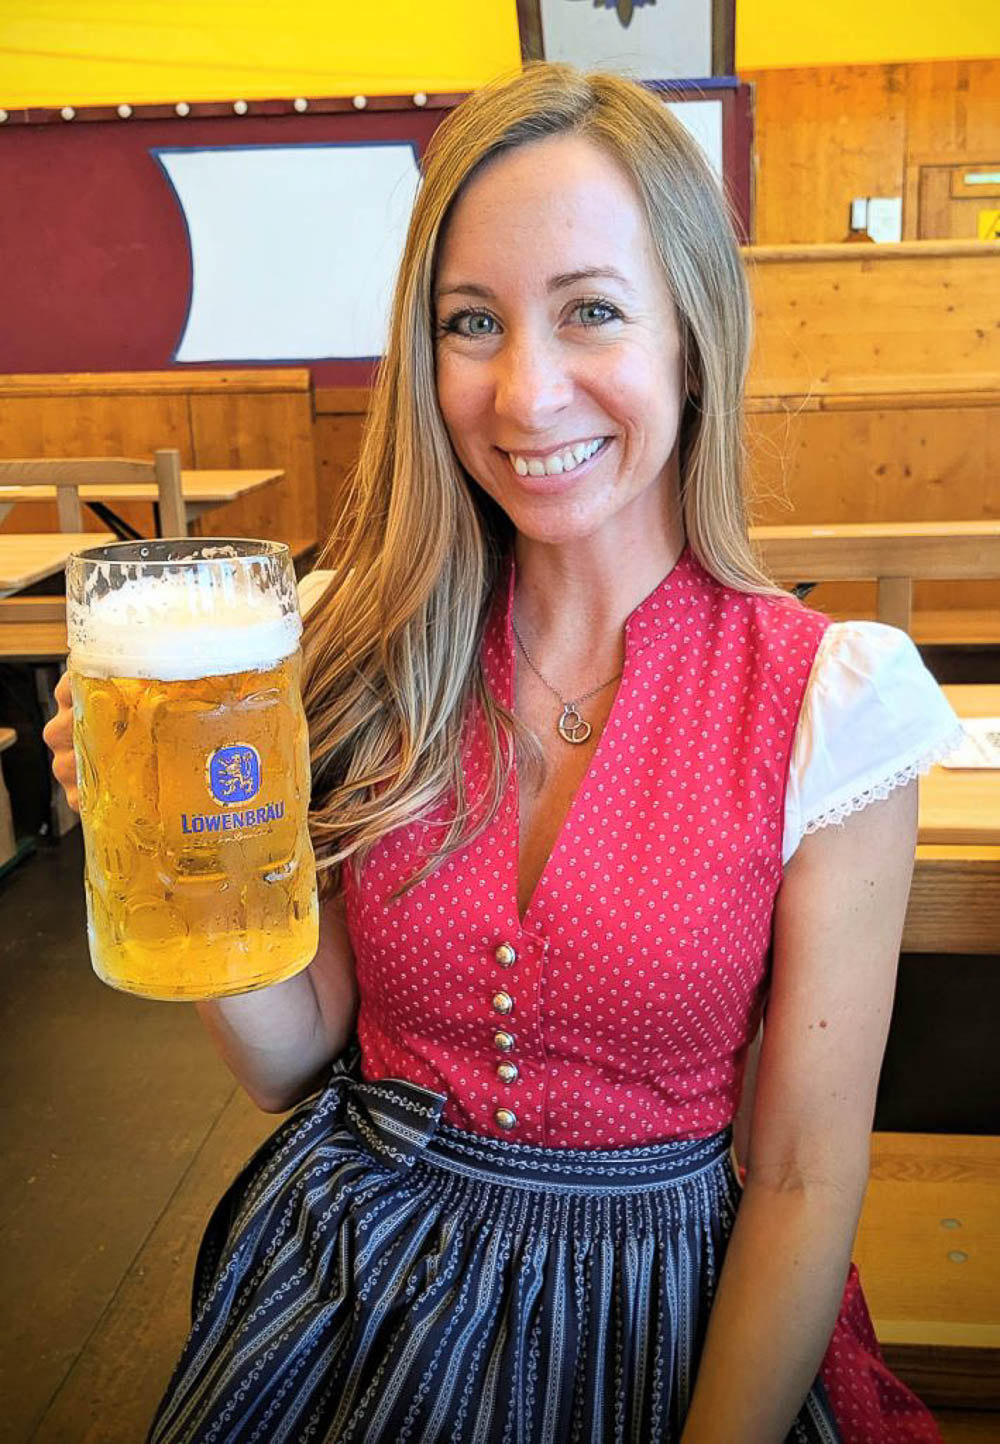 Oktoberfest Beer Stein | Bavaria Trachten